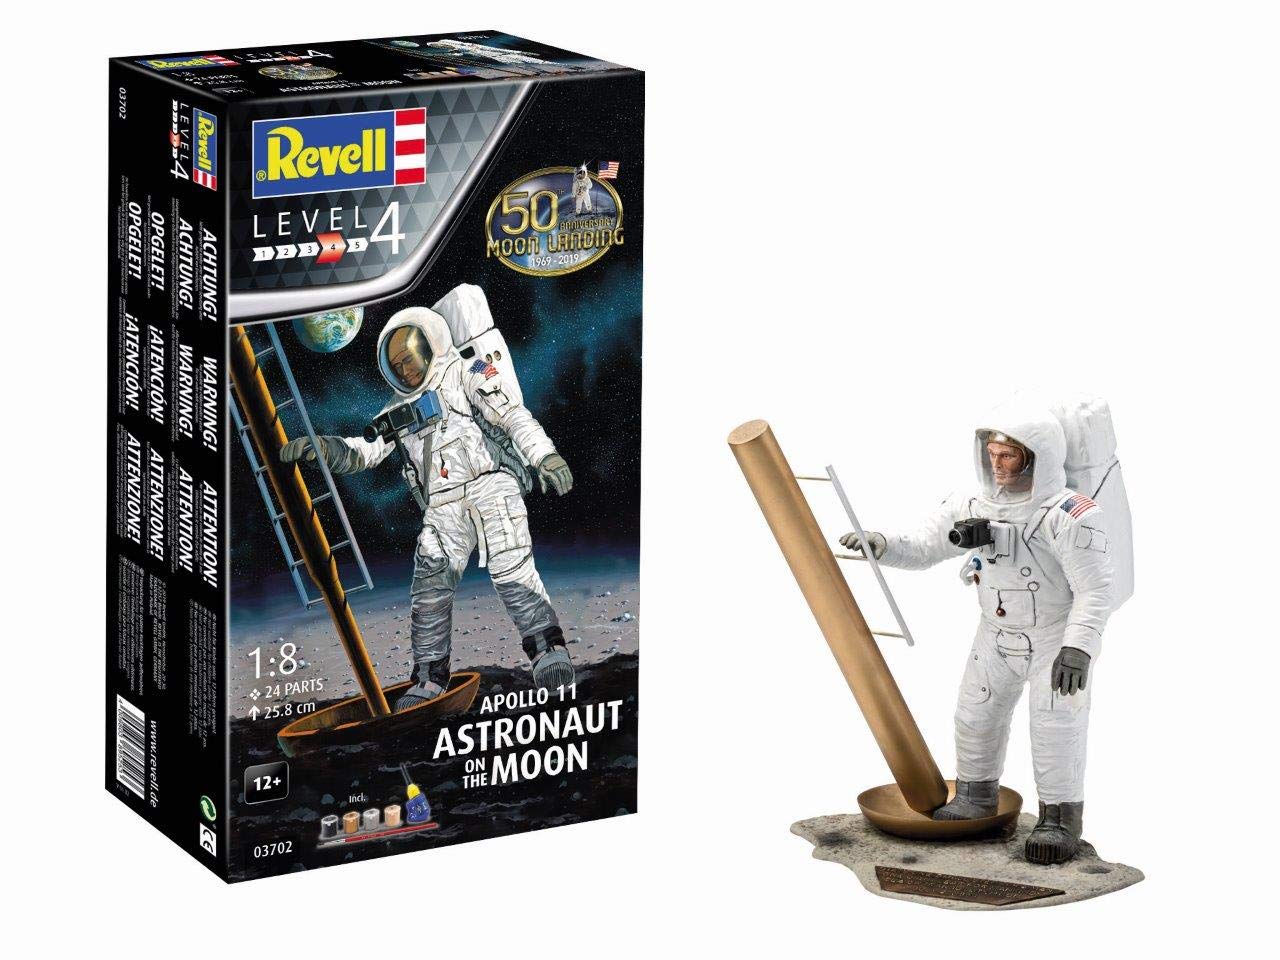 Revell 03702 Apollo 11 Astronaut on the Moon detailgetreuer Modellbausatz 1:8